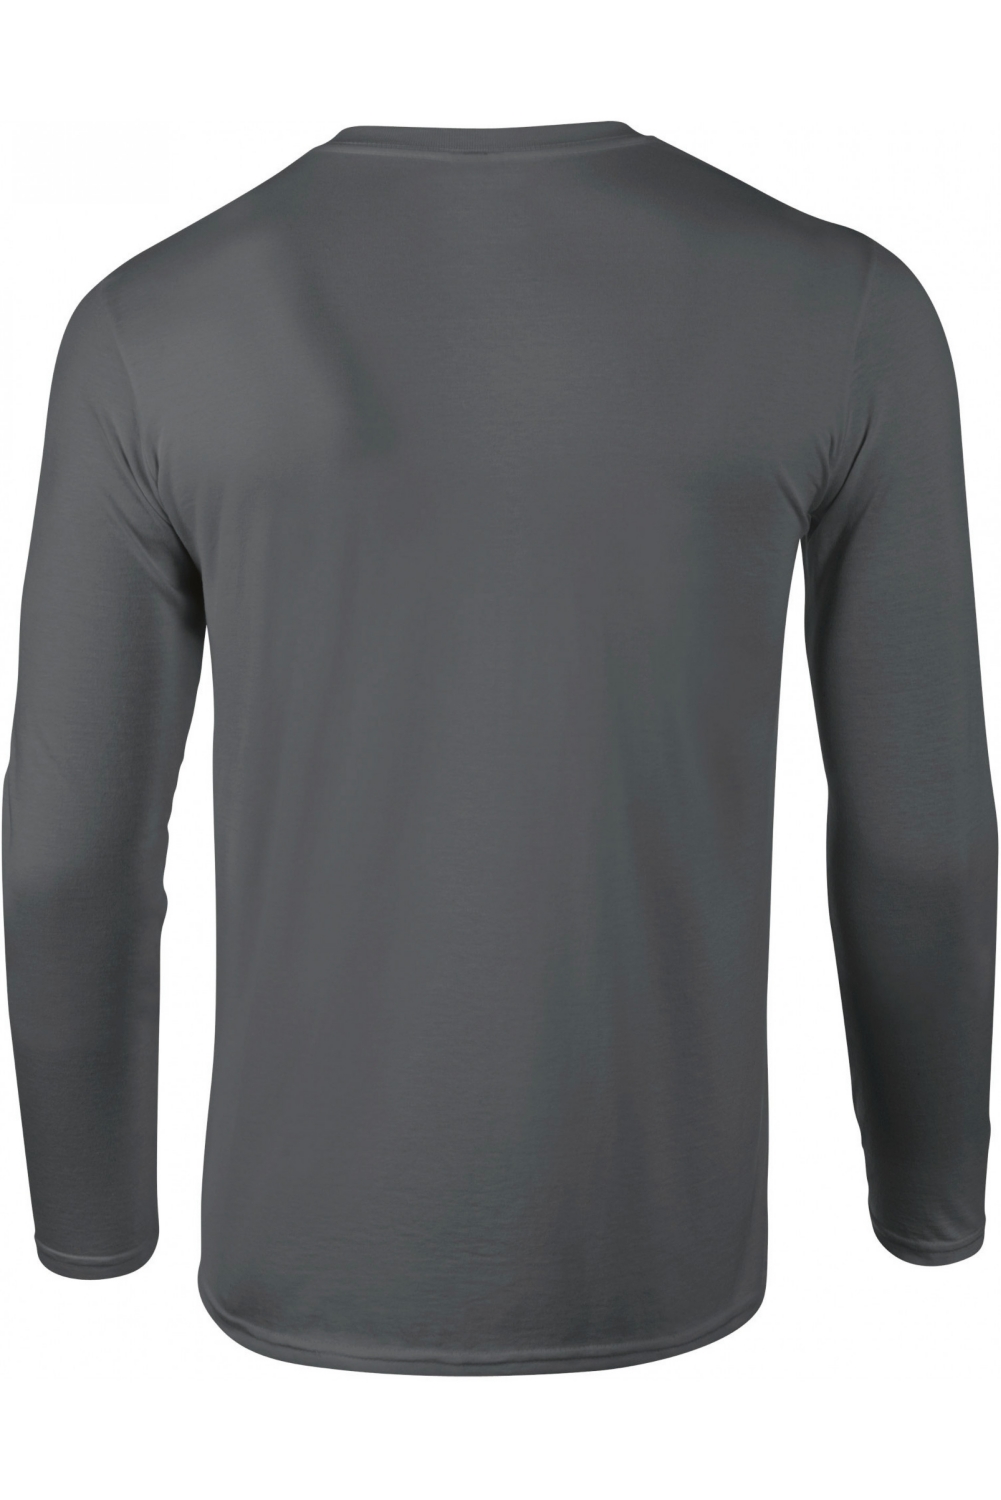 Tee-shirt ML GI64400 - Gris charcoal Gildan